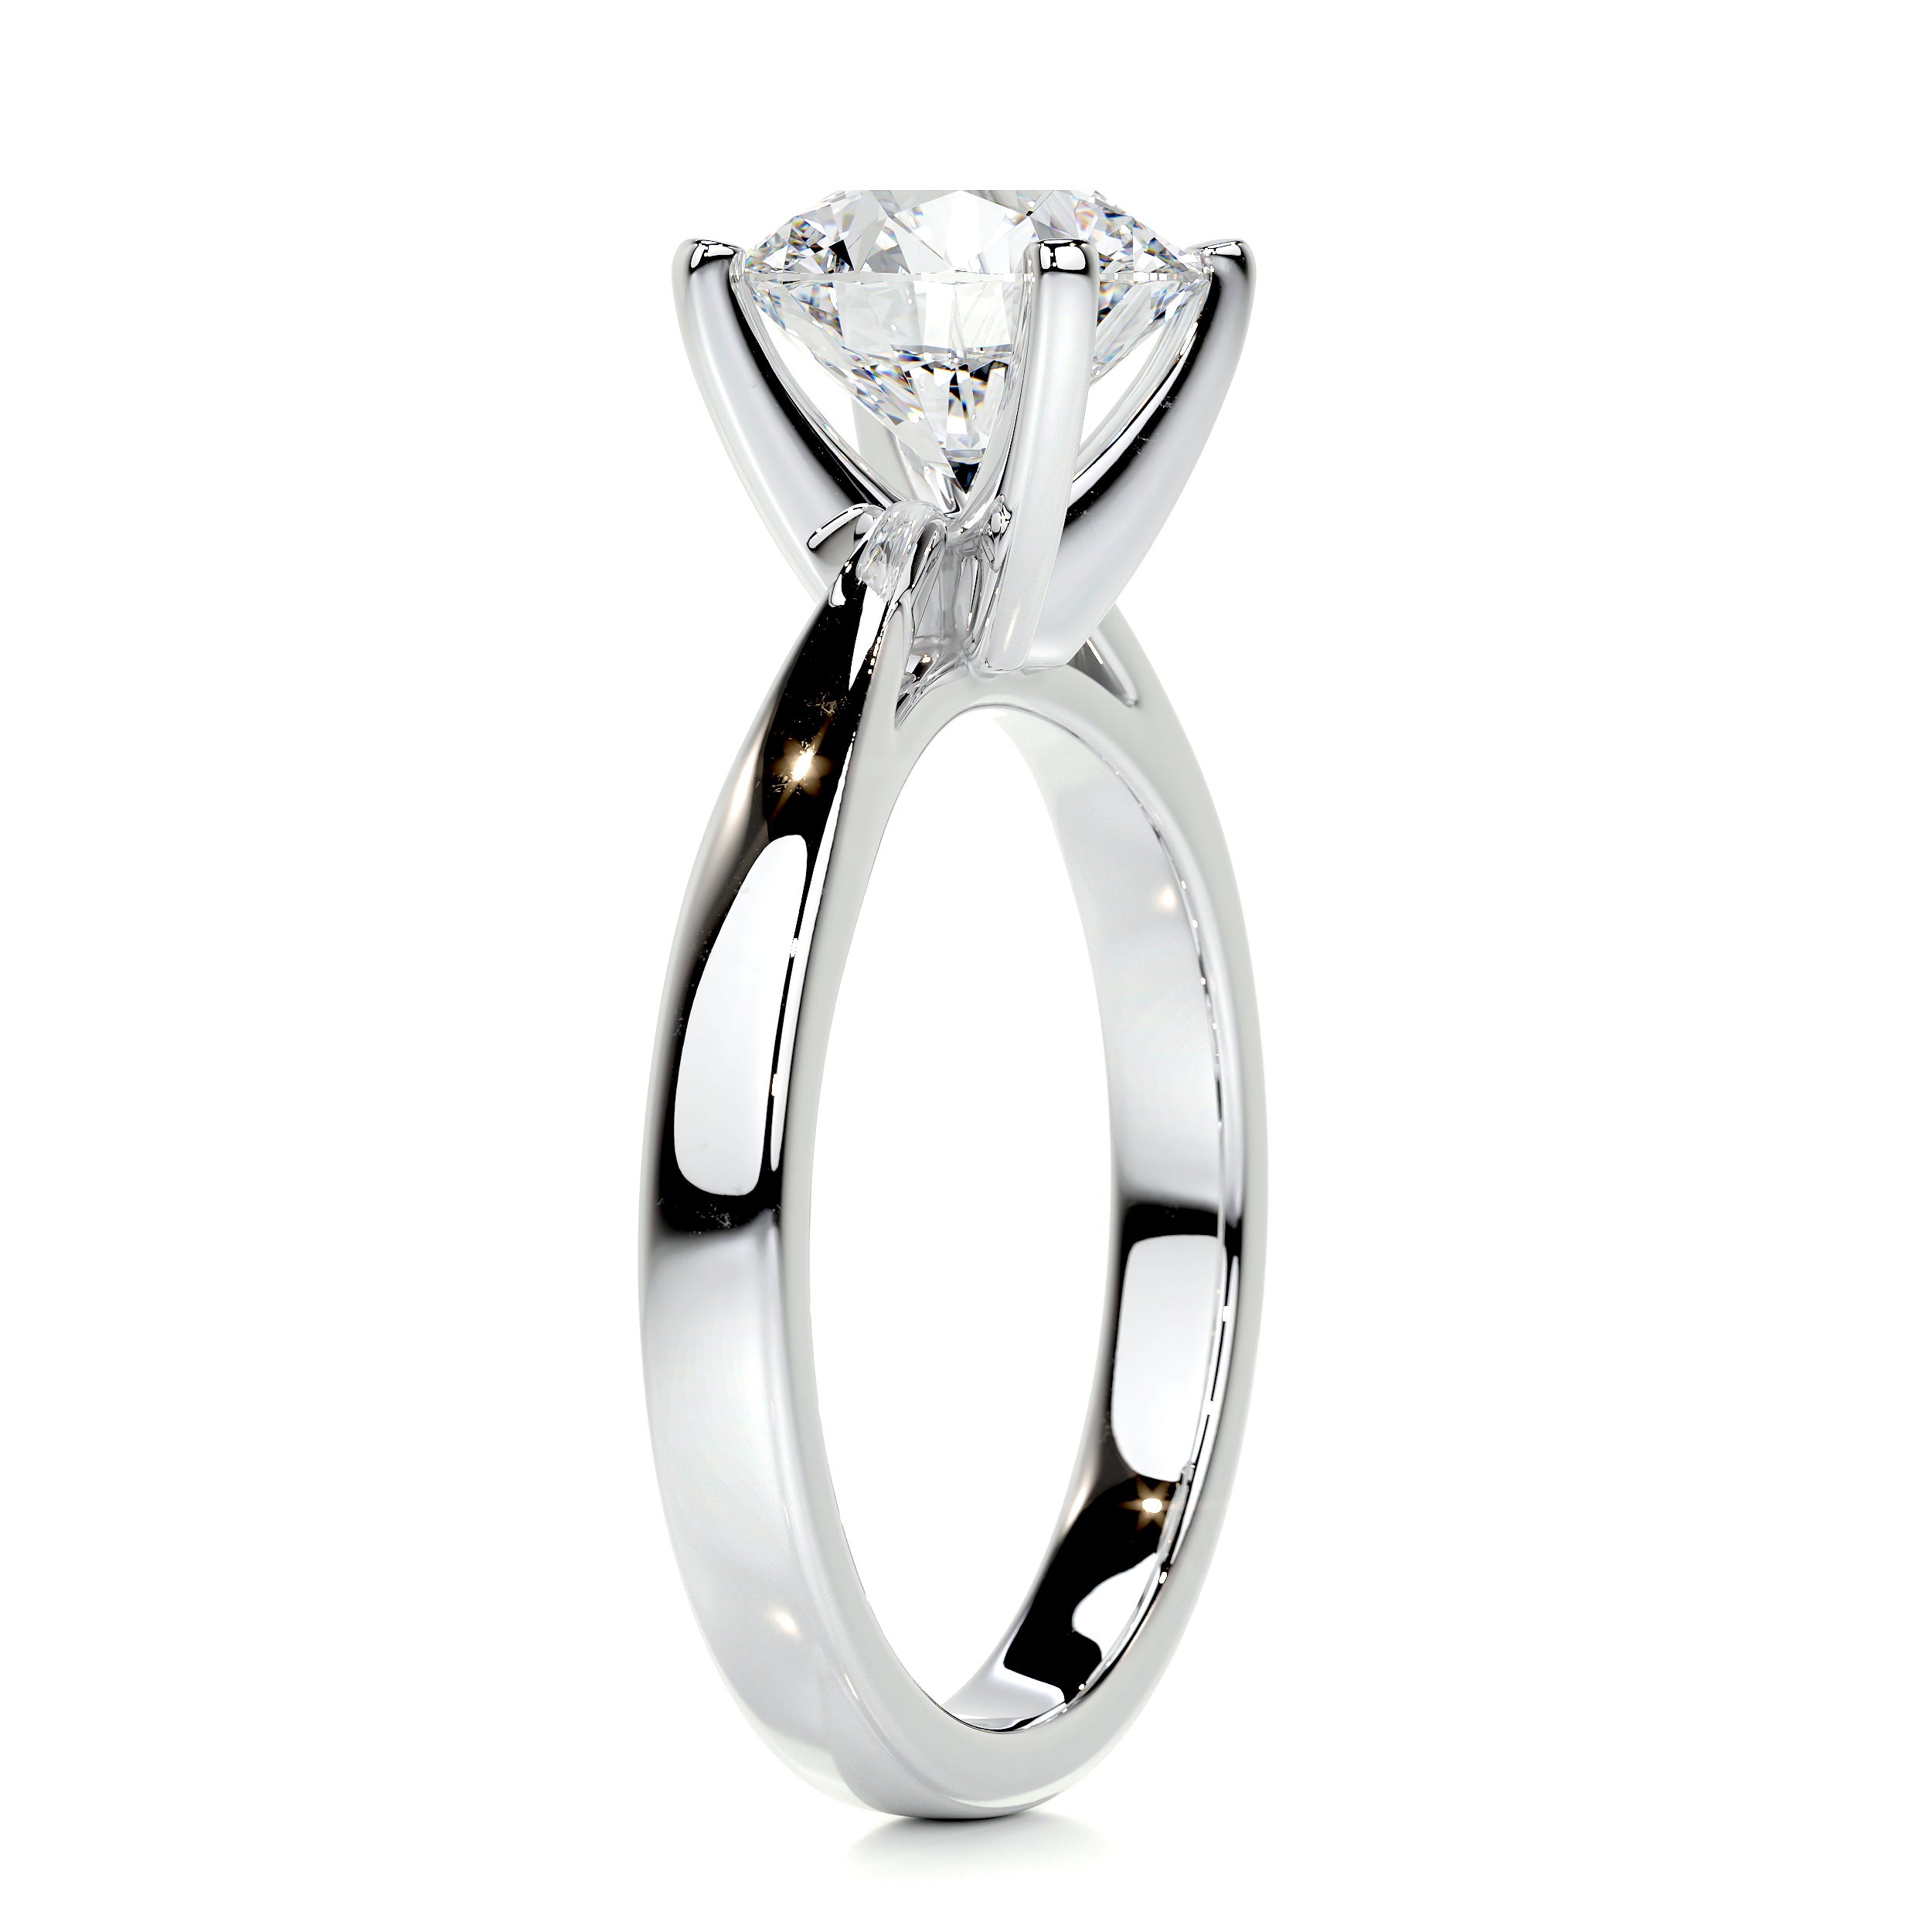 Diana Diamond Engagement Ring   (2 Carat) -18K White Gold